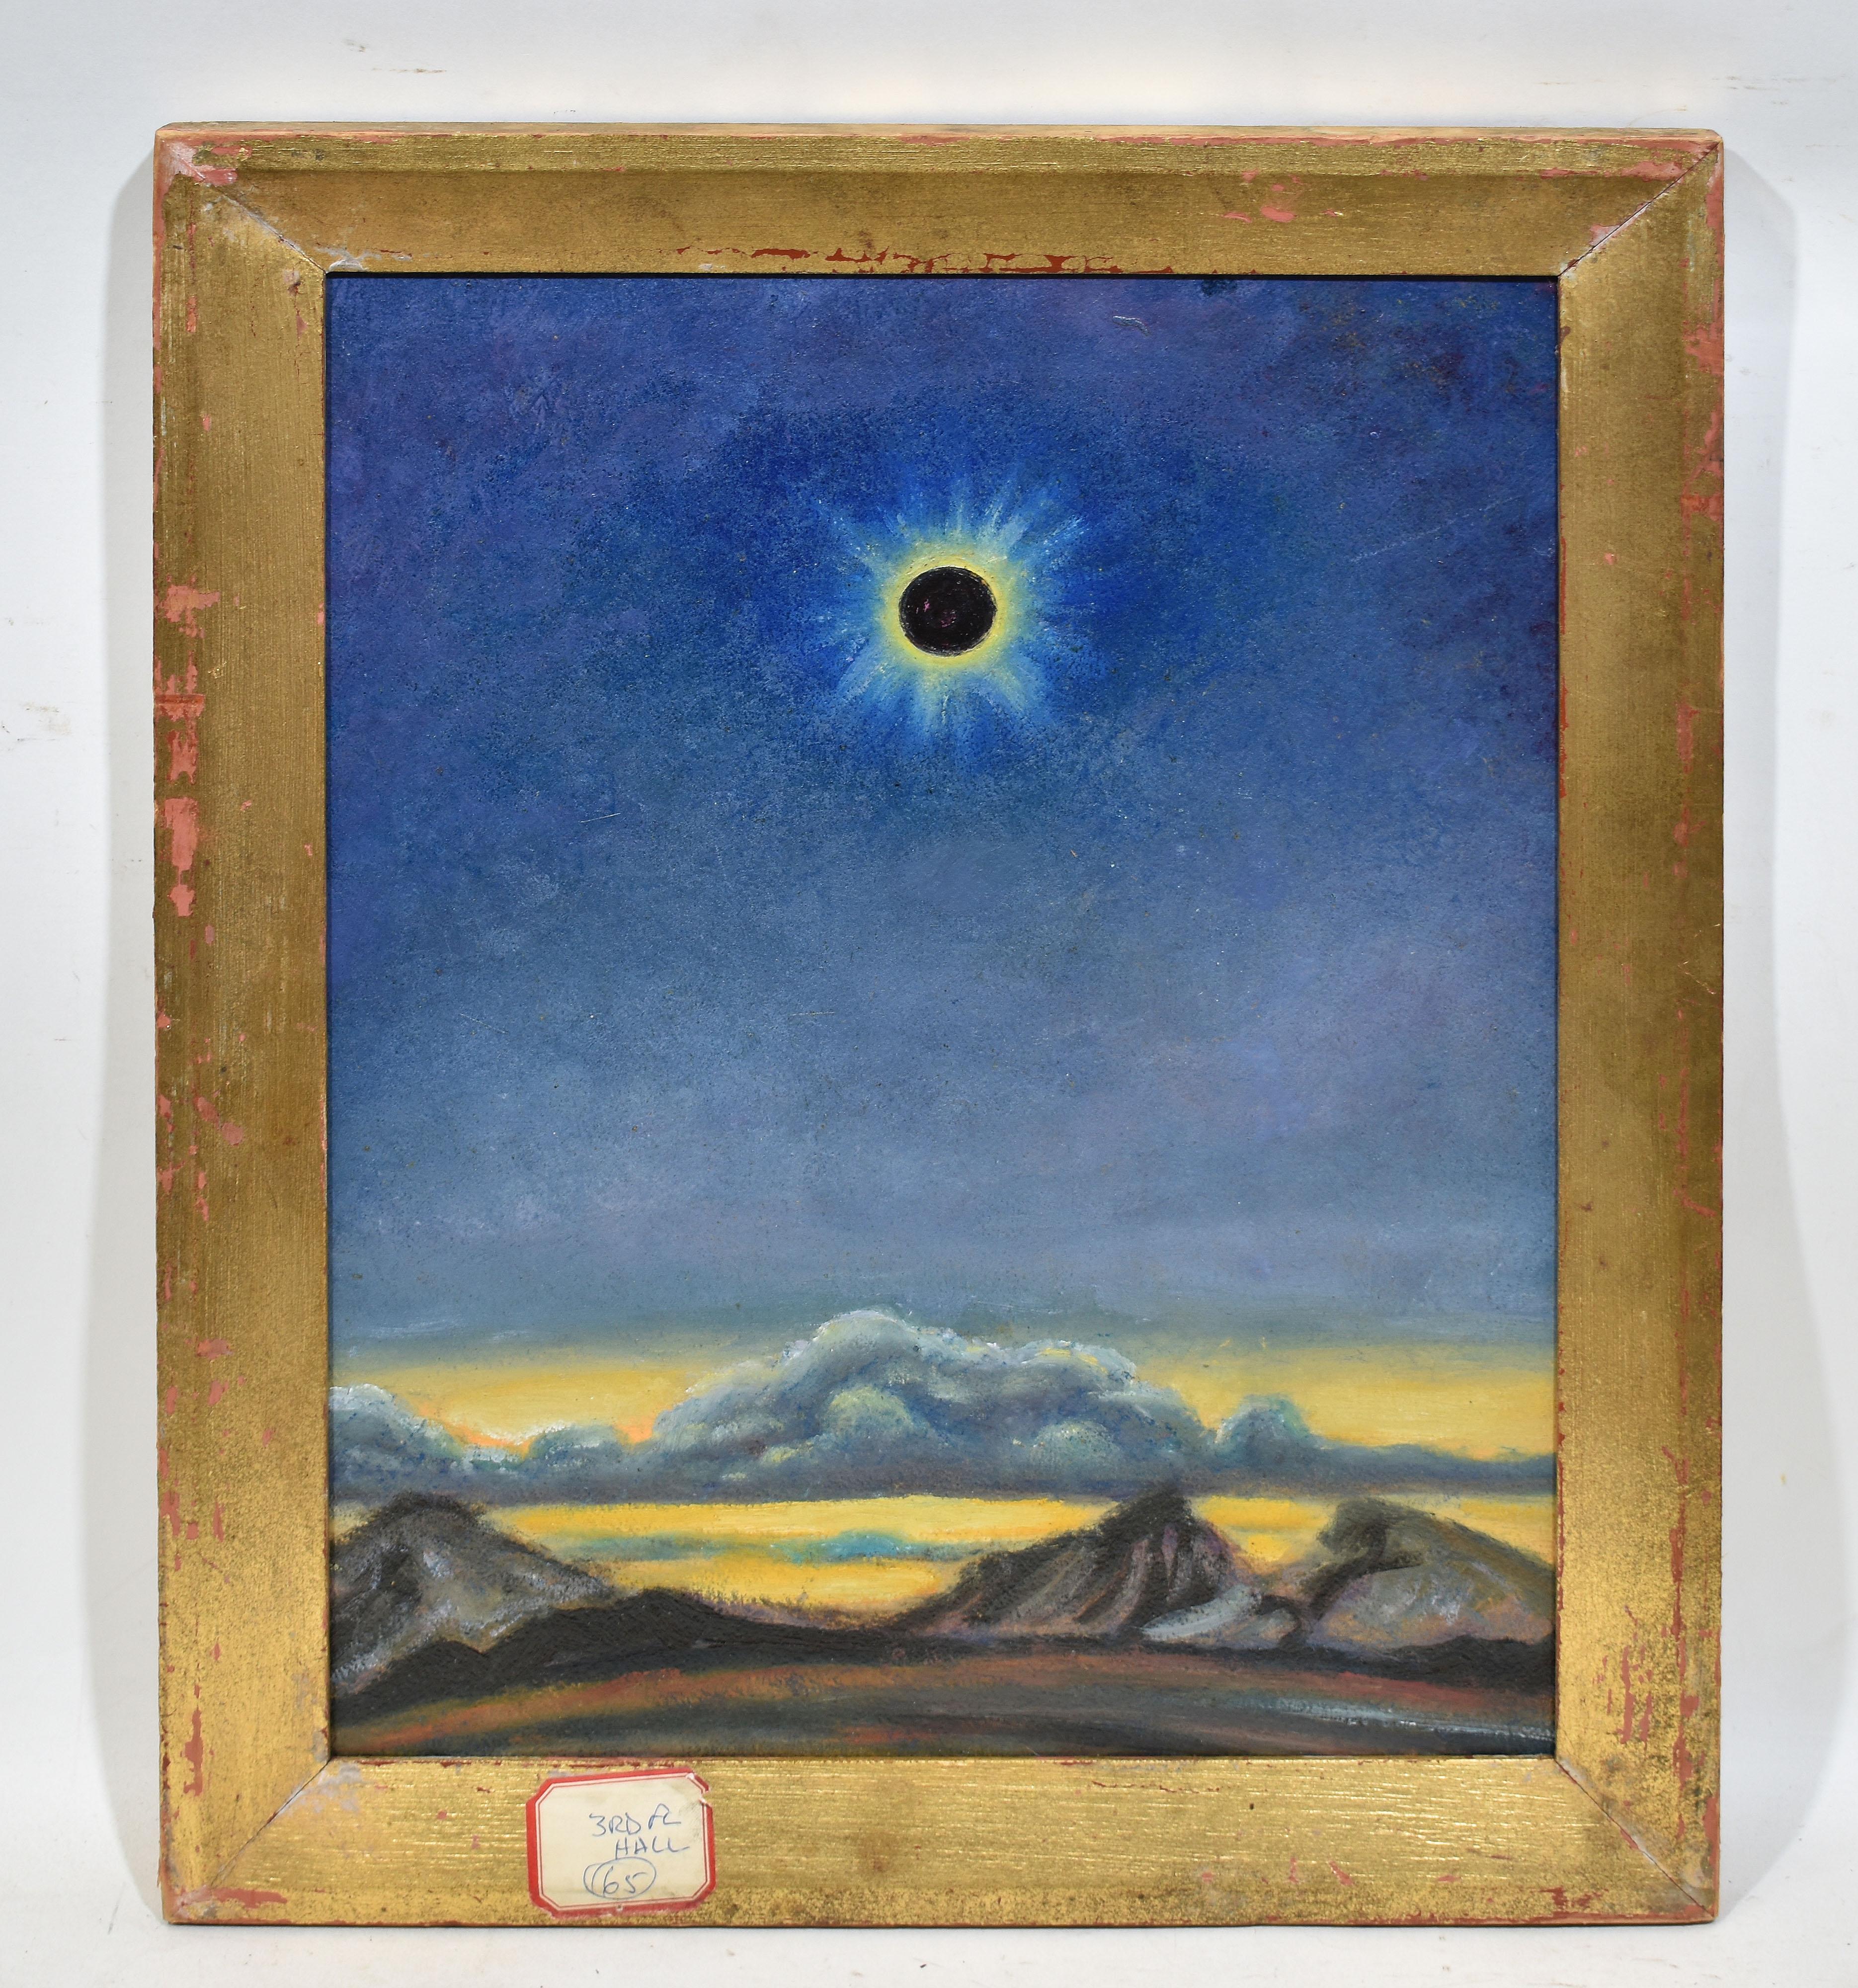 Antique Original Oil Painting of Solar Eclipse Modernist Celestial Landscape (Grau), Landscape Painting, von Unknown